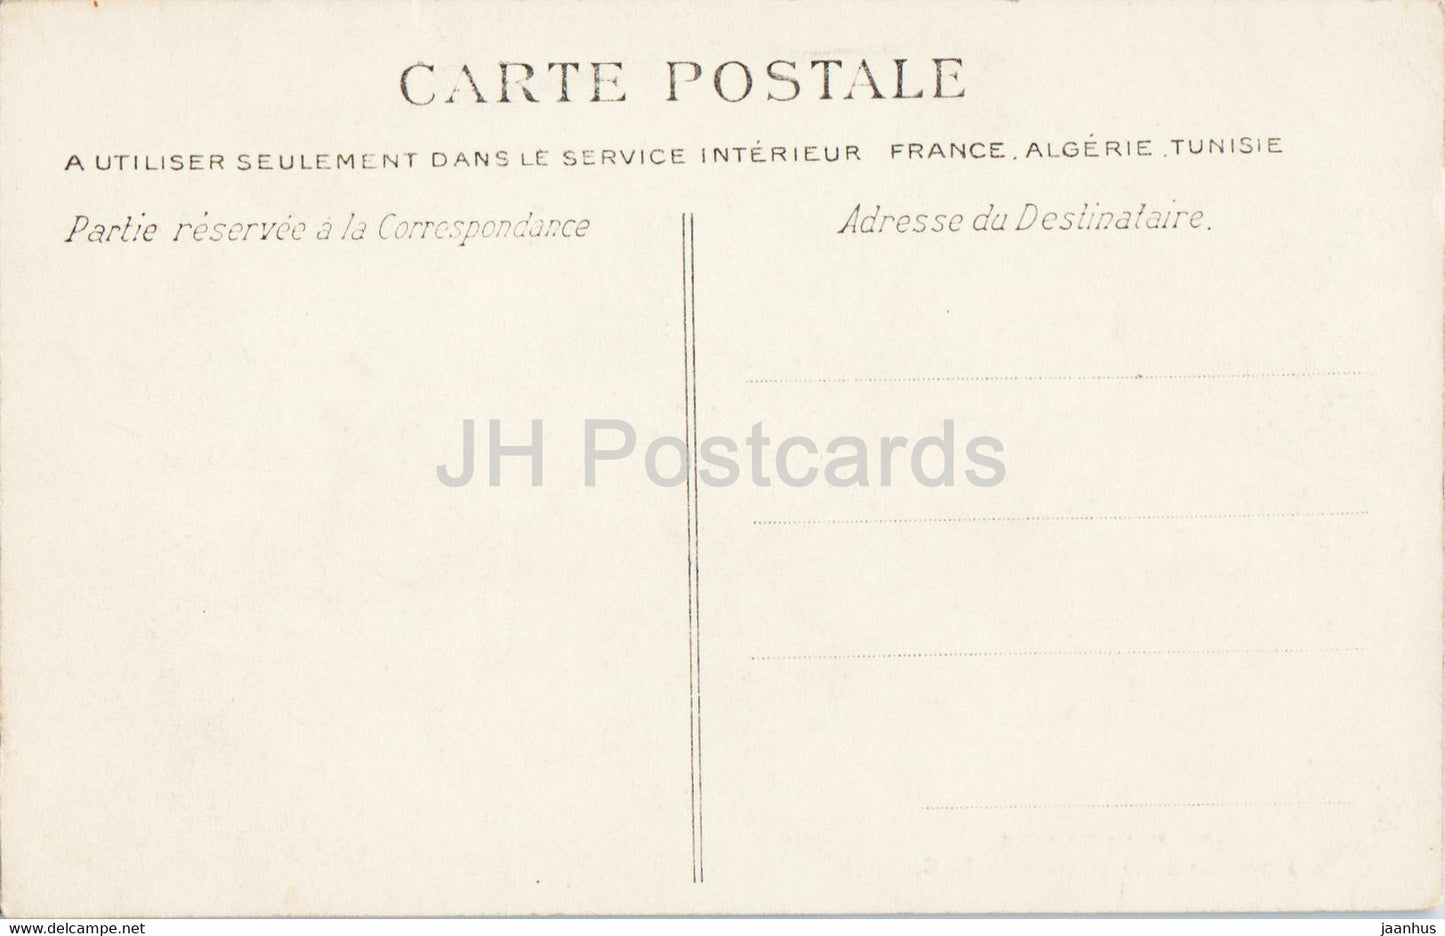 Villennes - Intérieur de la Grotte - grotte - 19 - carte postale ancienne - France - inutilisée